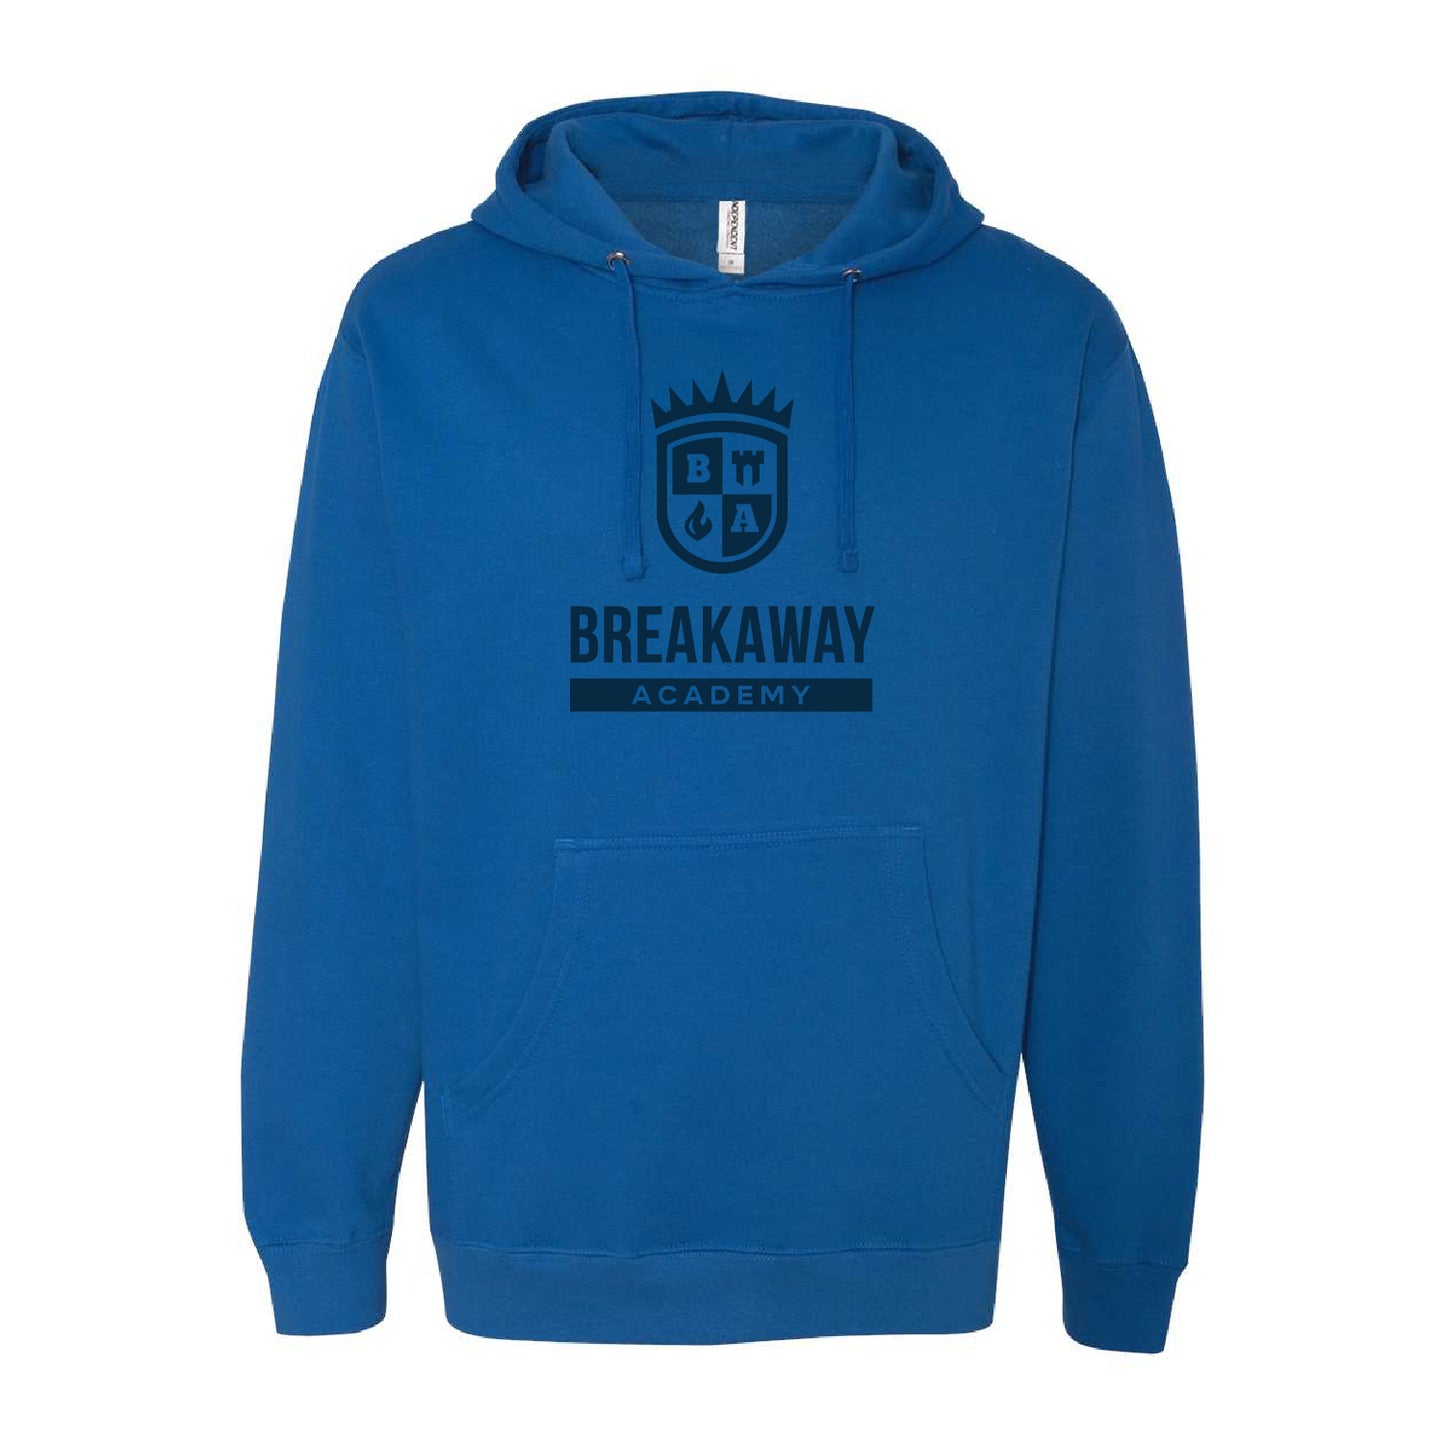 Breakaway Academy Midweight Hooded Sweatshirt